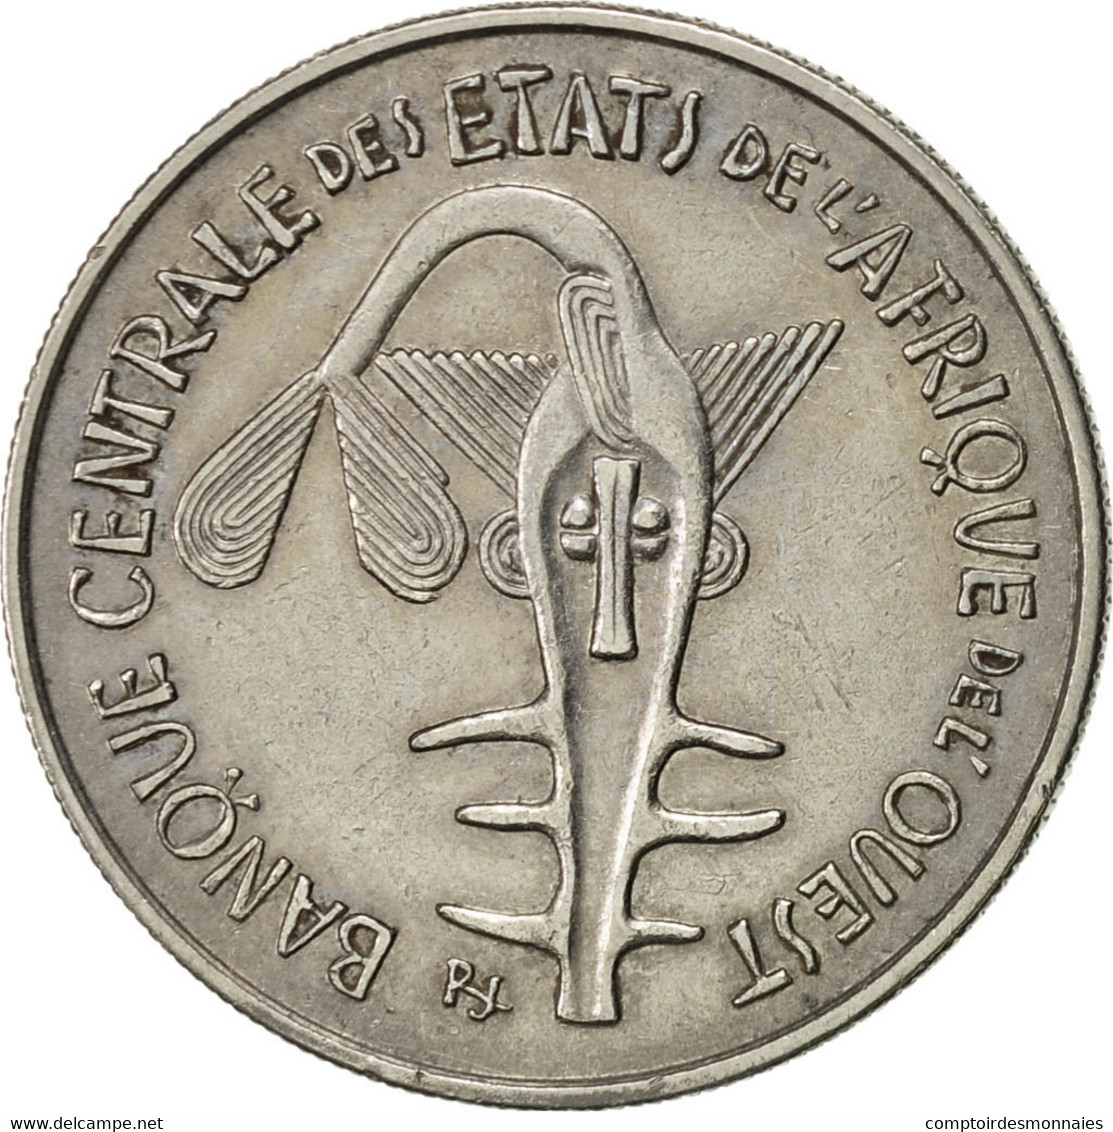 Monnaie, West African States, 100 Francs, 1968, Paris, TTB+, Nickel, KM:4 - Elfenbeinküste